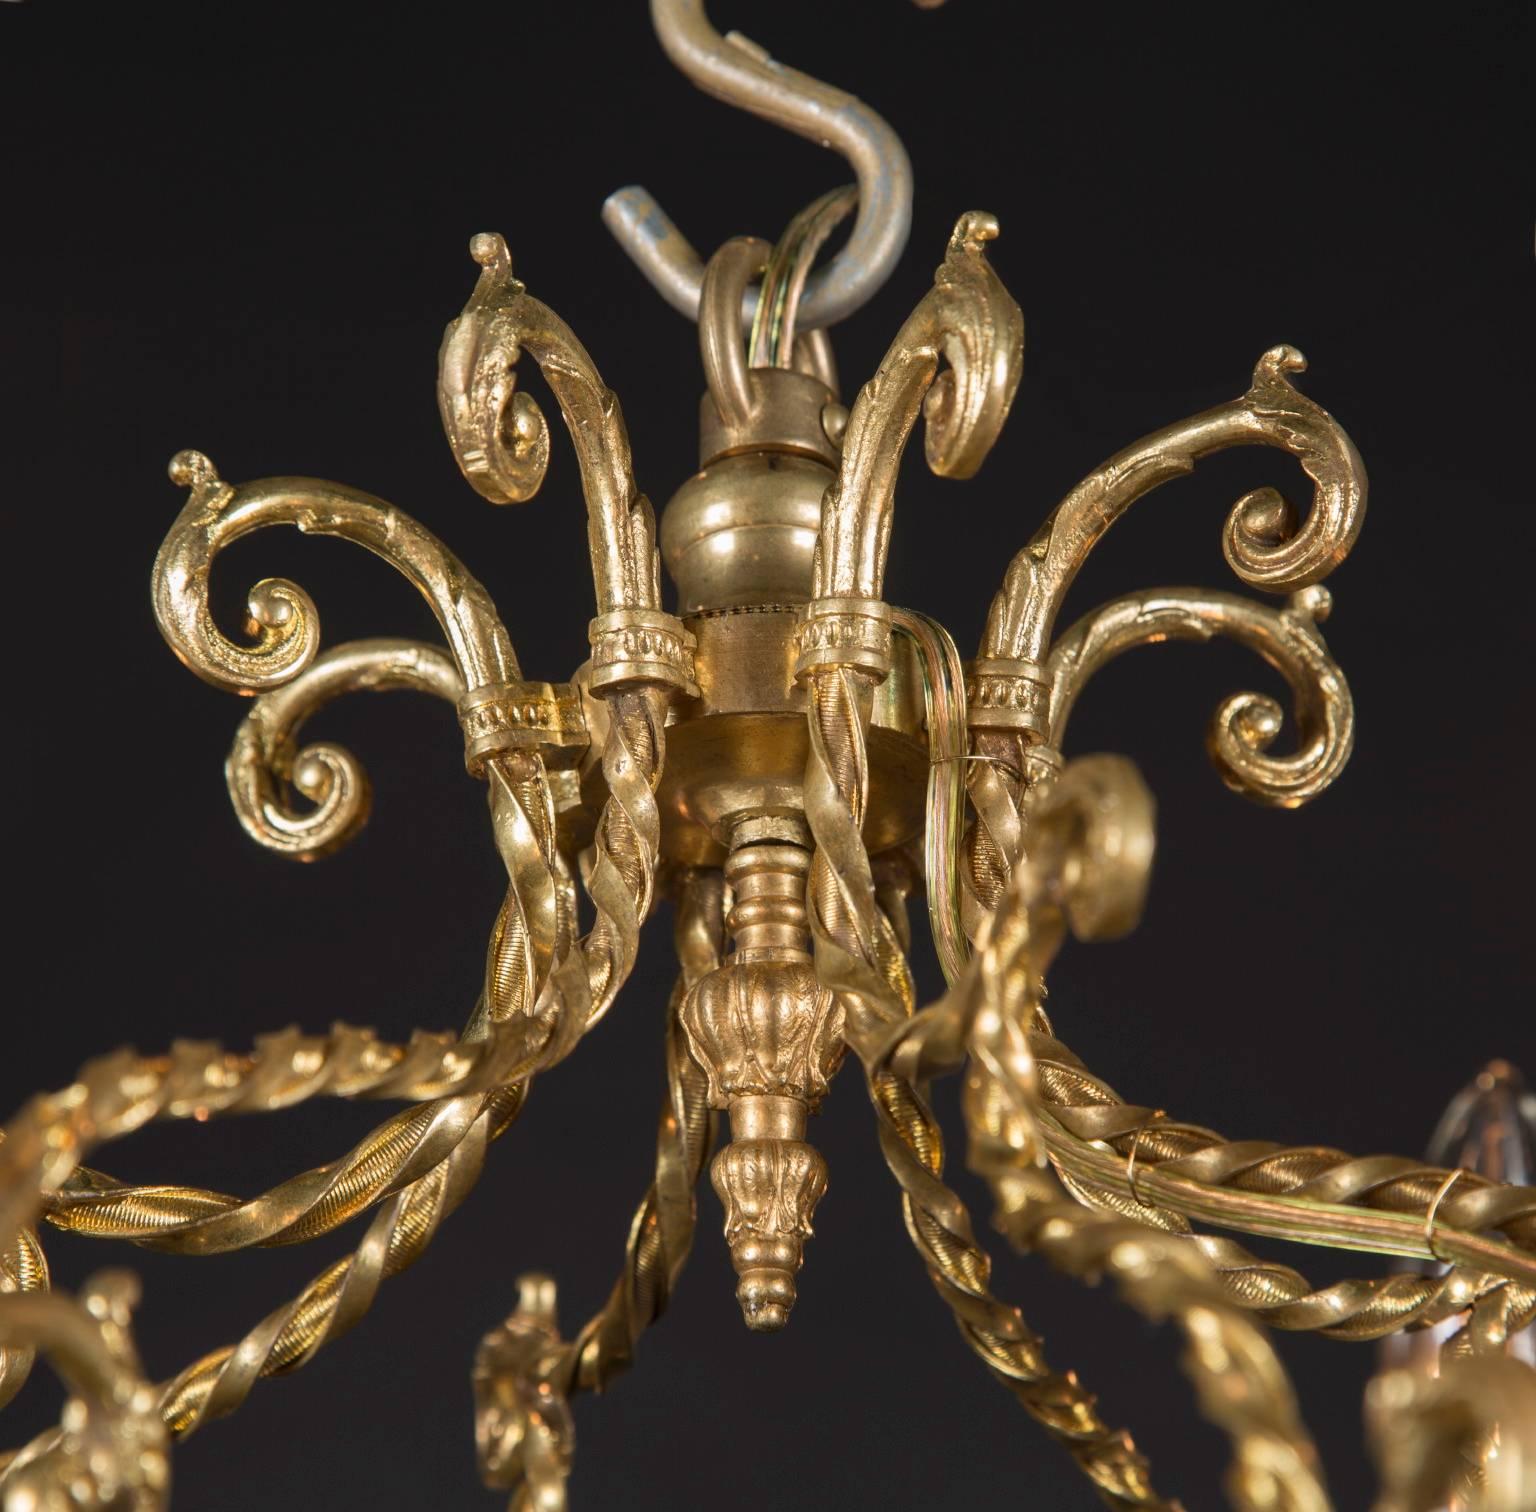 Ce lustre français ancien de style Louis XVI est composé de bronze d'or et d'un motif unique de volutes. La pièce date du milieu du XIXe siècle et a été fabriquée à la main avant l'ère de l'industrialisation. La pièce comporte des coupes de bougies